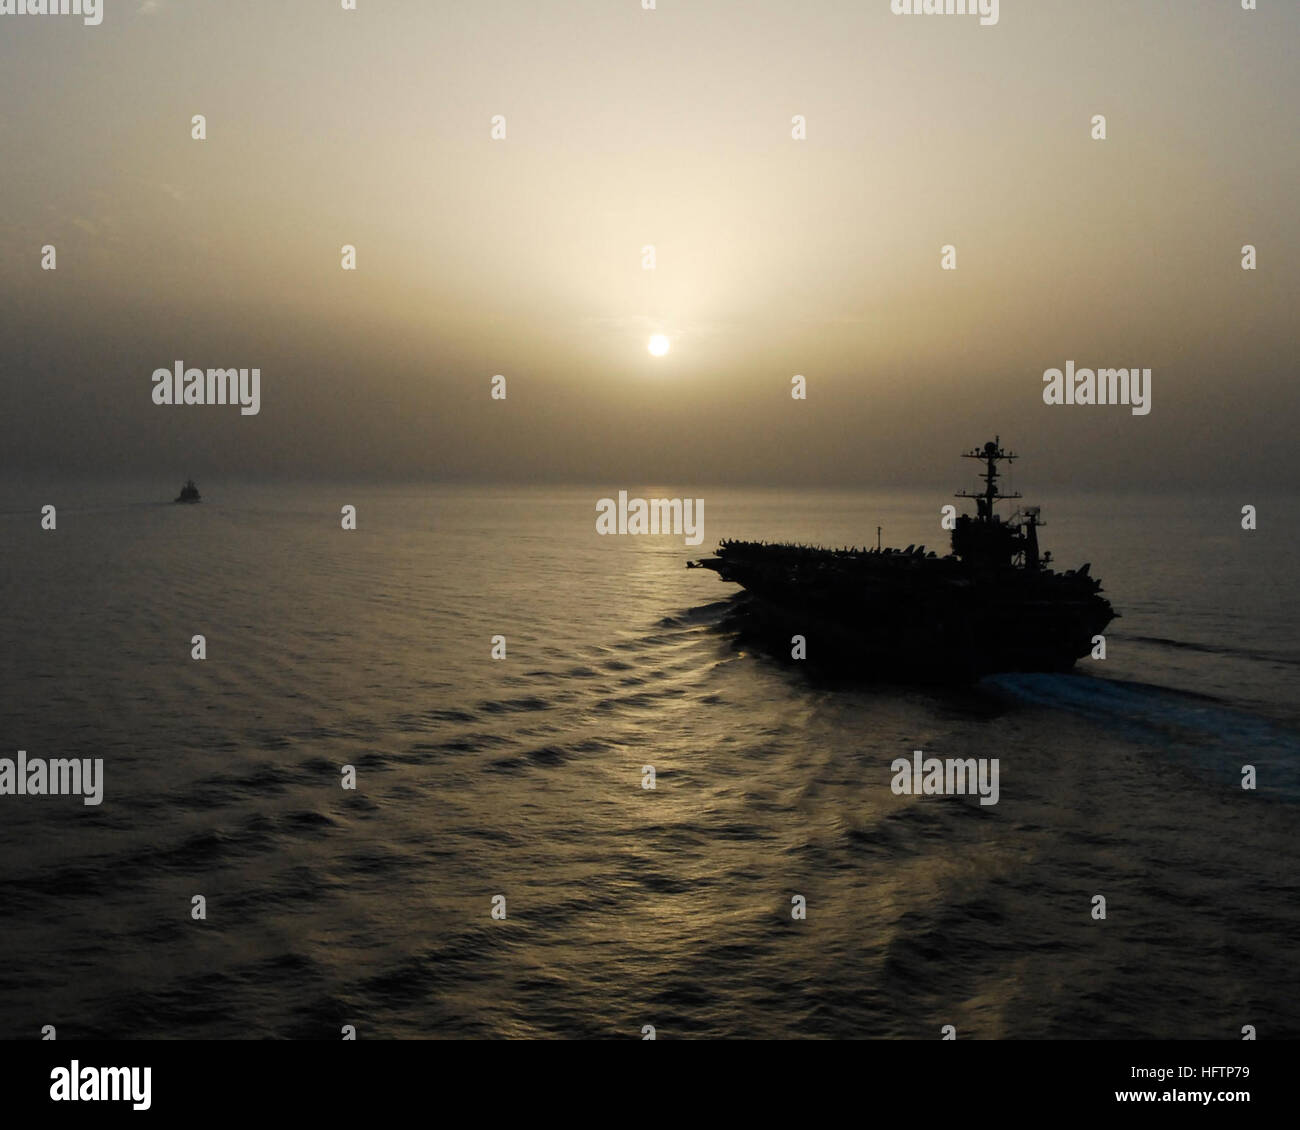 070522-N-8157C-049 Arabisches Meer (22. Mai 2007) - transit USS John C. Stennis (CVN-74) durch den Golf von Oman bei Sonnenuntergang. John C. Stennis Carrier Strike Group ist auf eine regelmäßige Bereitstellung zur Unterstützung der Operationen auf See. Seeoperationen dazu beitragen, die Voraussetzungen für Sicherheit und Stabilität in die Meeresumwelt sowie die Ergänzung der Terrorismusbekämpfung und Sicherheitsbemühungen auf die regionalen Nationen festgelegt. Foto: U.S. Navy Mass Communication Specialist 1. Klasse Denny Cantrell (freigegeben) U.S. Navy 070522-N-8157C-049 USS John C. Stennis (CVN-74) transit durch den Golf von Oman Stockfoto